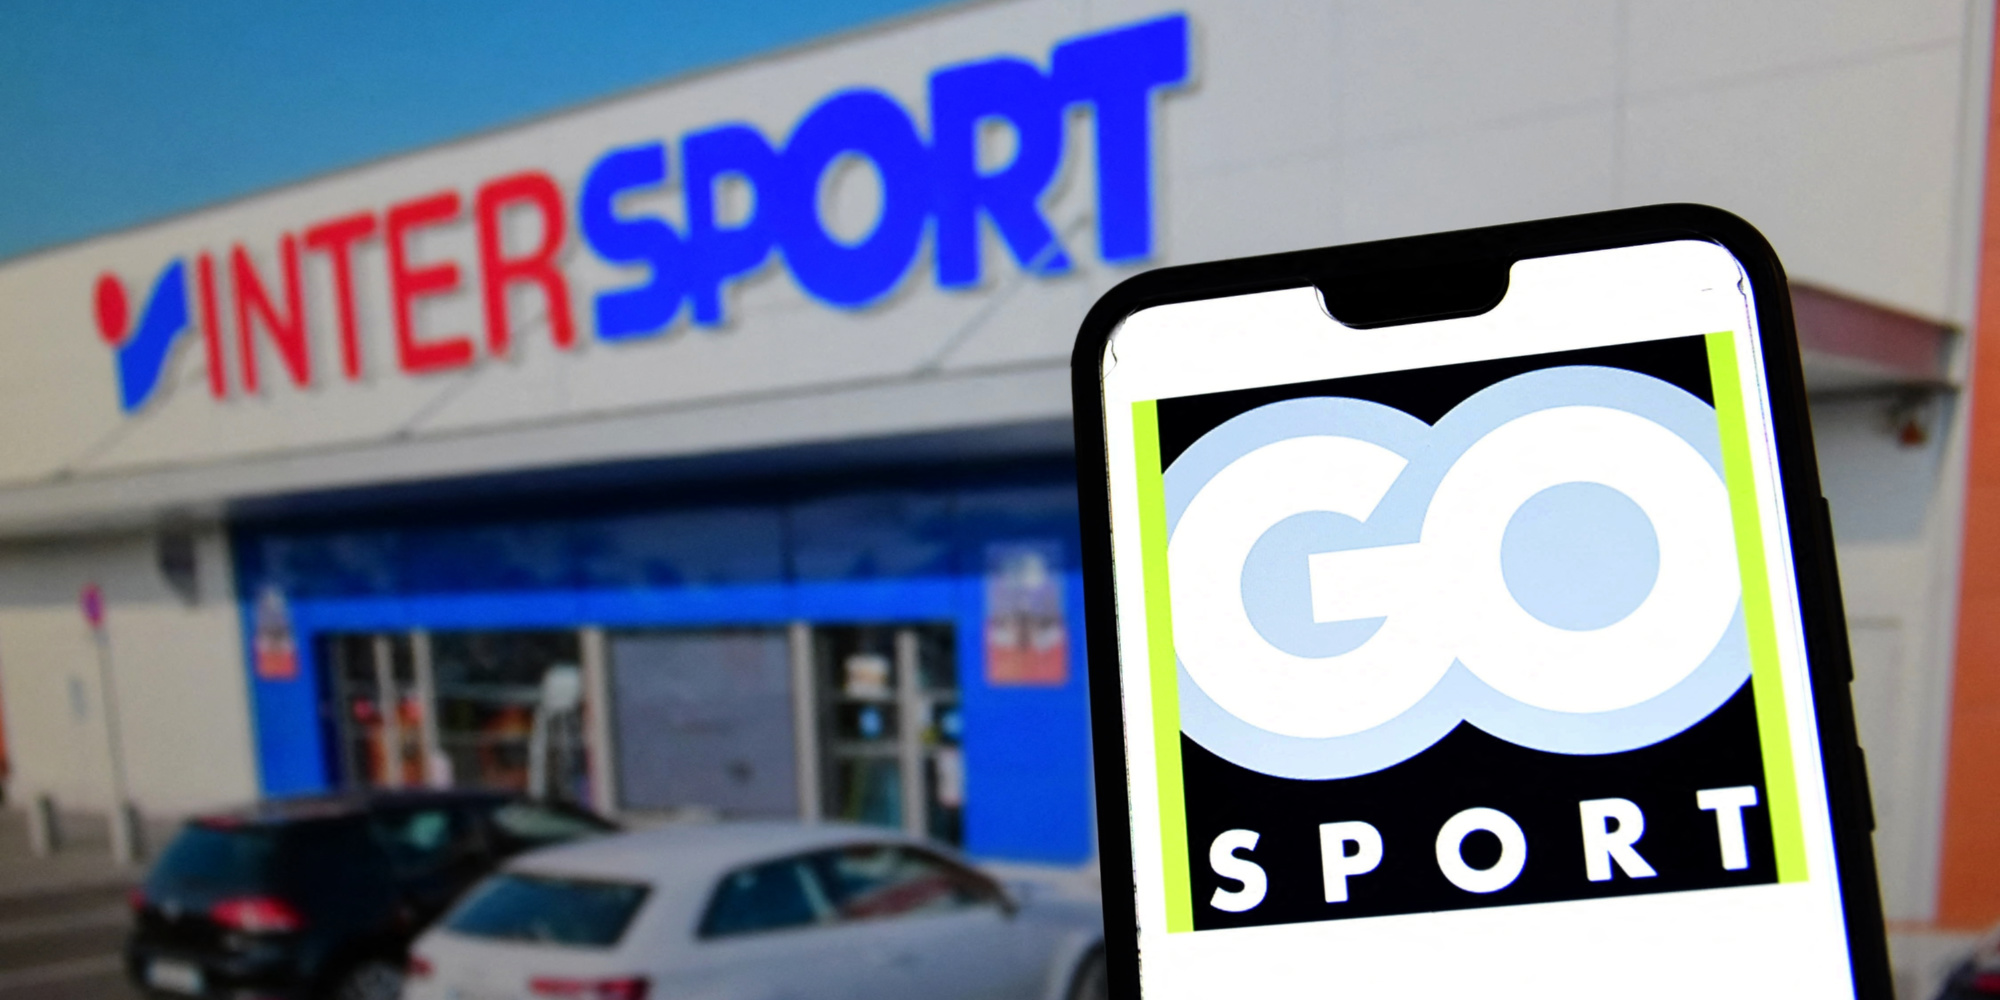 Avenir des employés, stratégie du groupe... Le PDG d'Intersport évoque la reprise de Go Sport